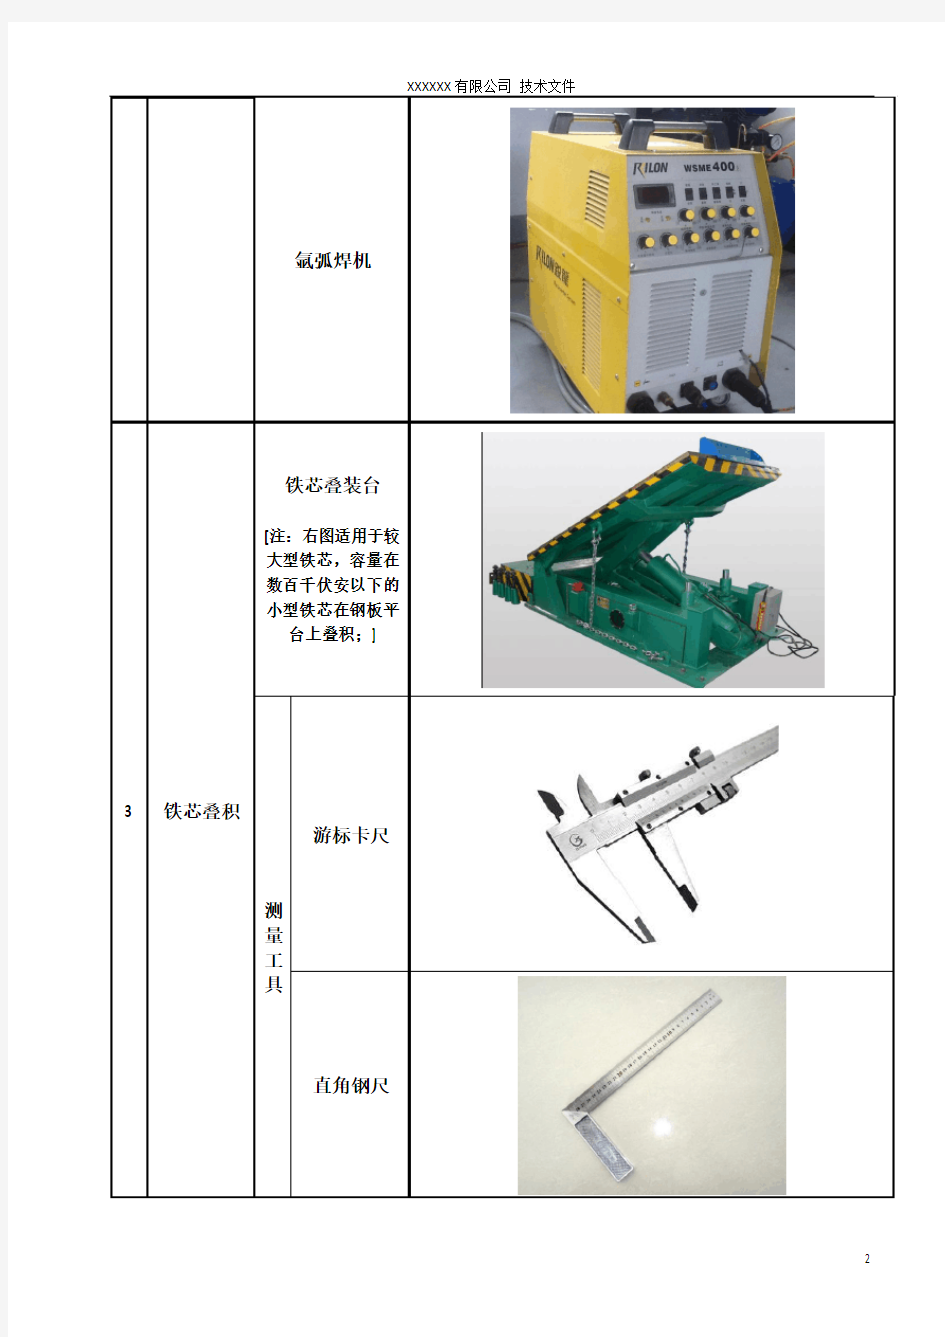 干式铁芯电抗器主要工装设备表(图)